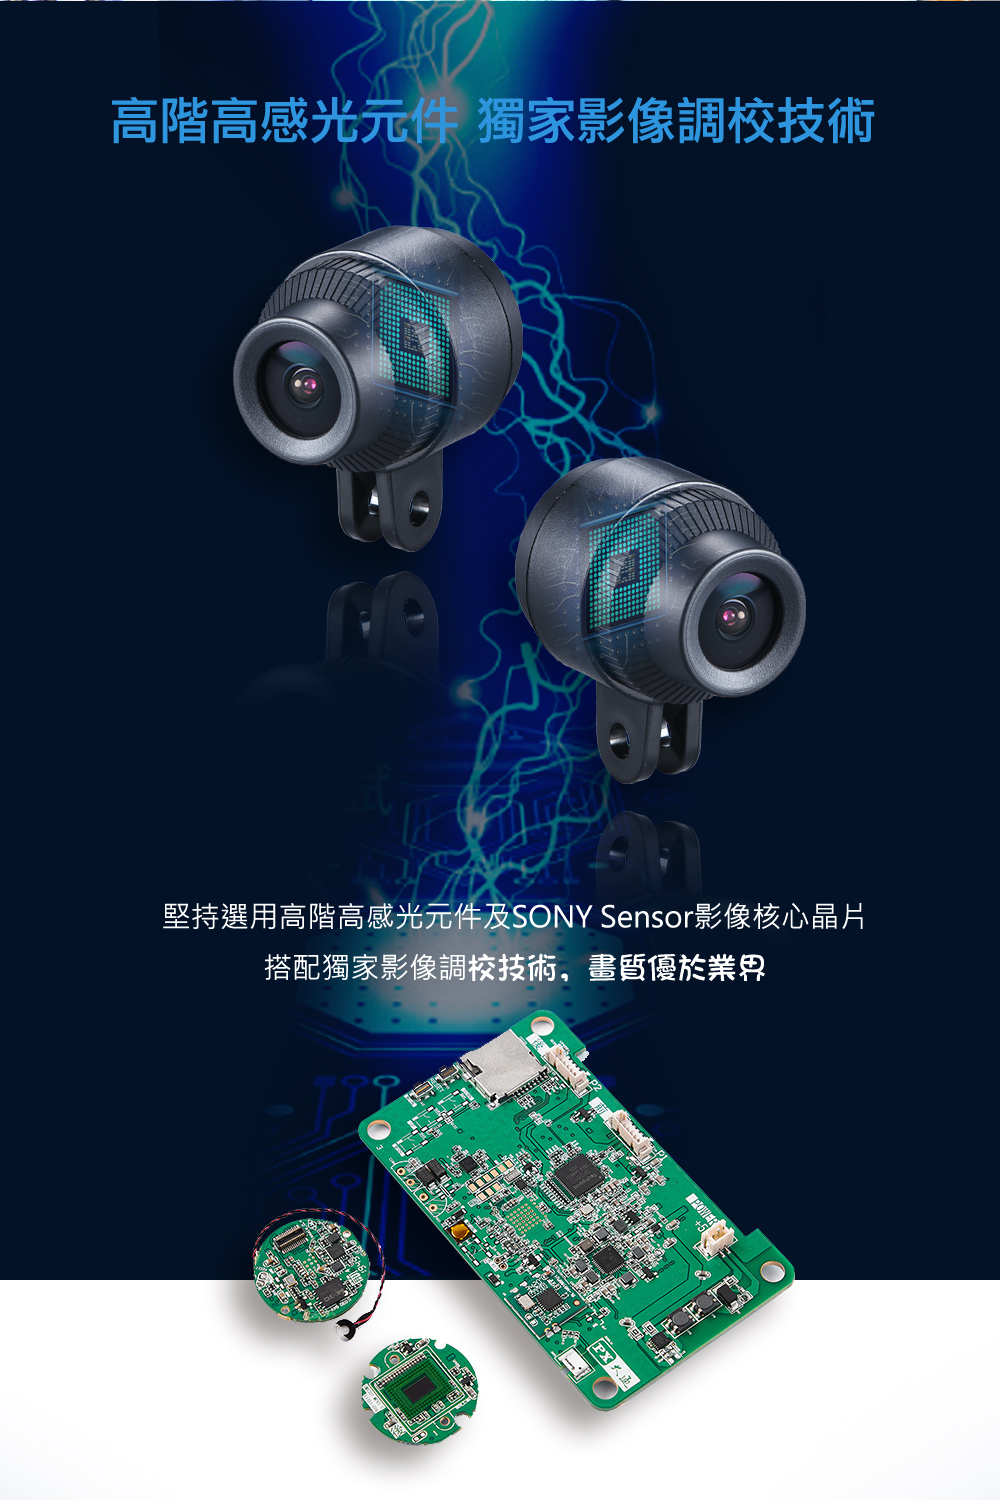 高階高感光元件獨家影像調校技術 堅持選用高階高感光元件及SONY Sensor影像核心晶片 搭配獨家影像調校技術,畫質優於業界 